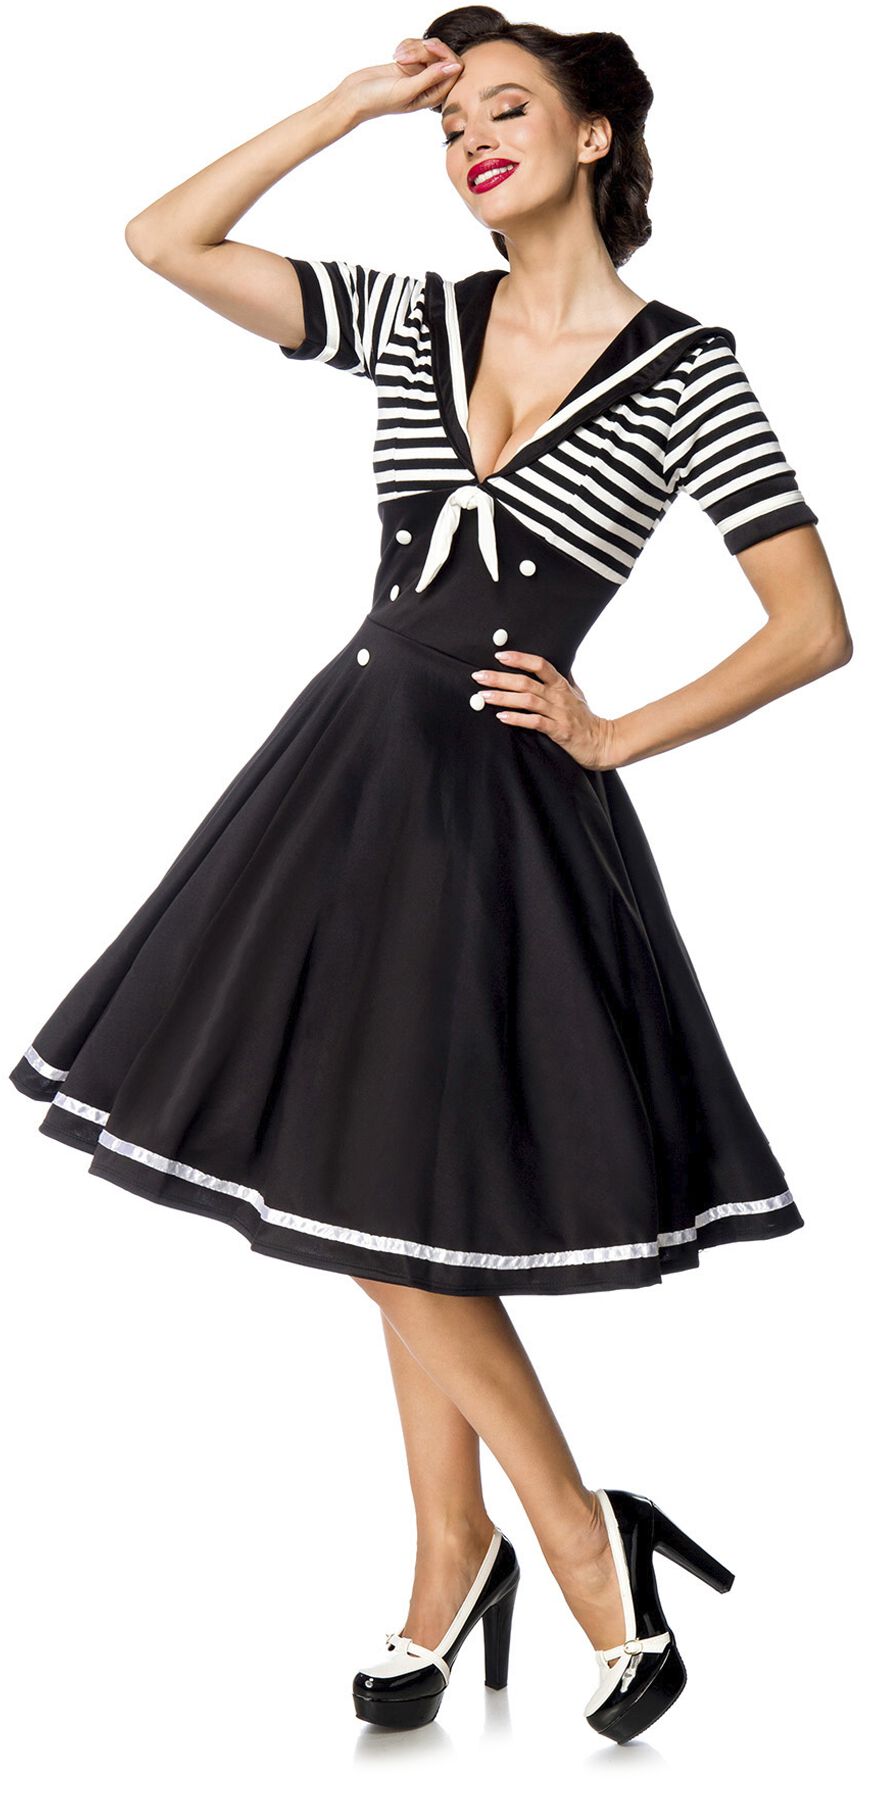 Belsira - Rockabilly Kleid knielang - Swing-Kleid im Marinelook - S bis 4XL - für Damen - Größe 3XL - schwarz/weiß